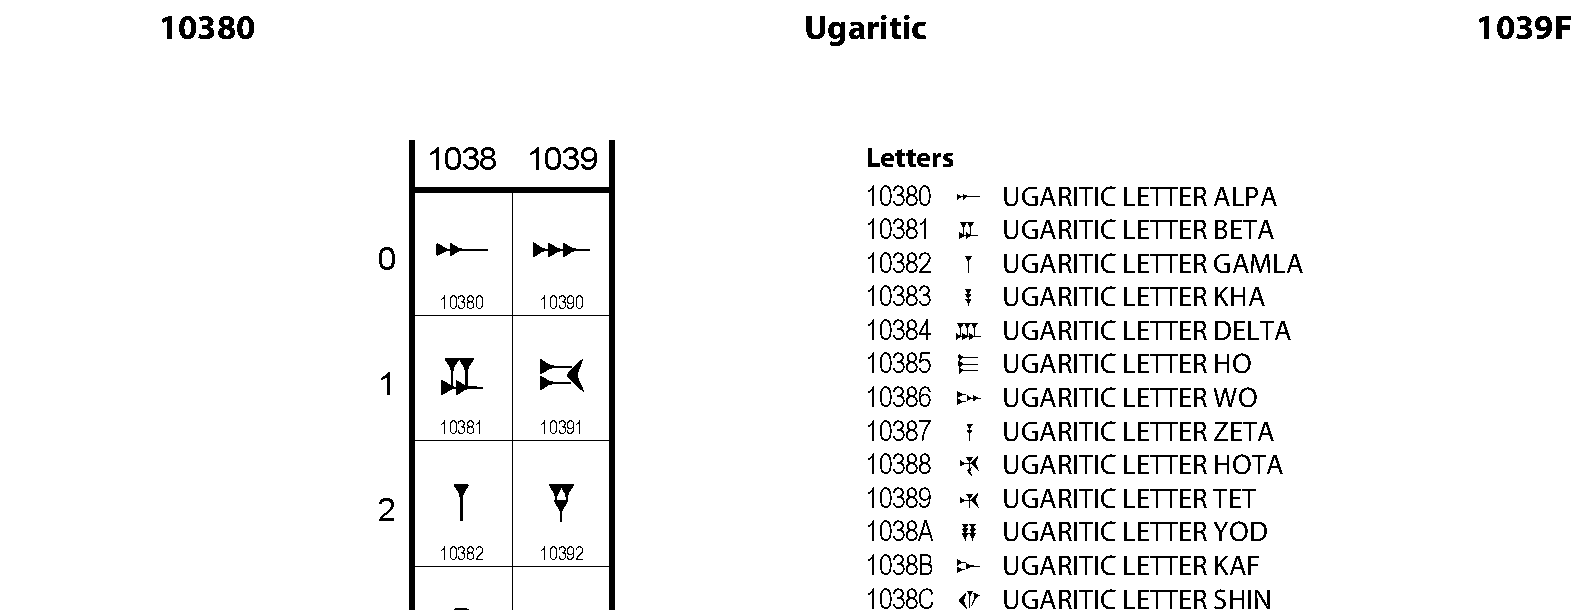 Unicode - Ugaritic